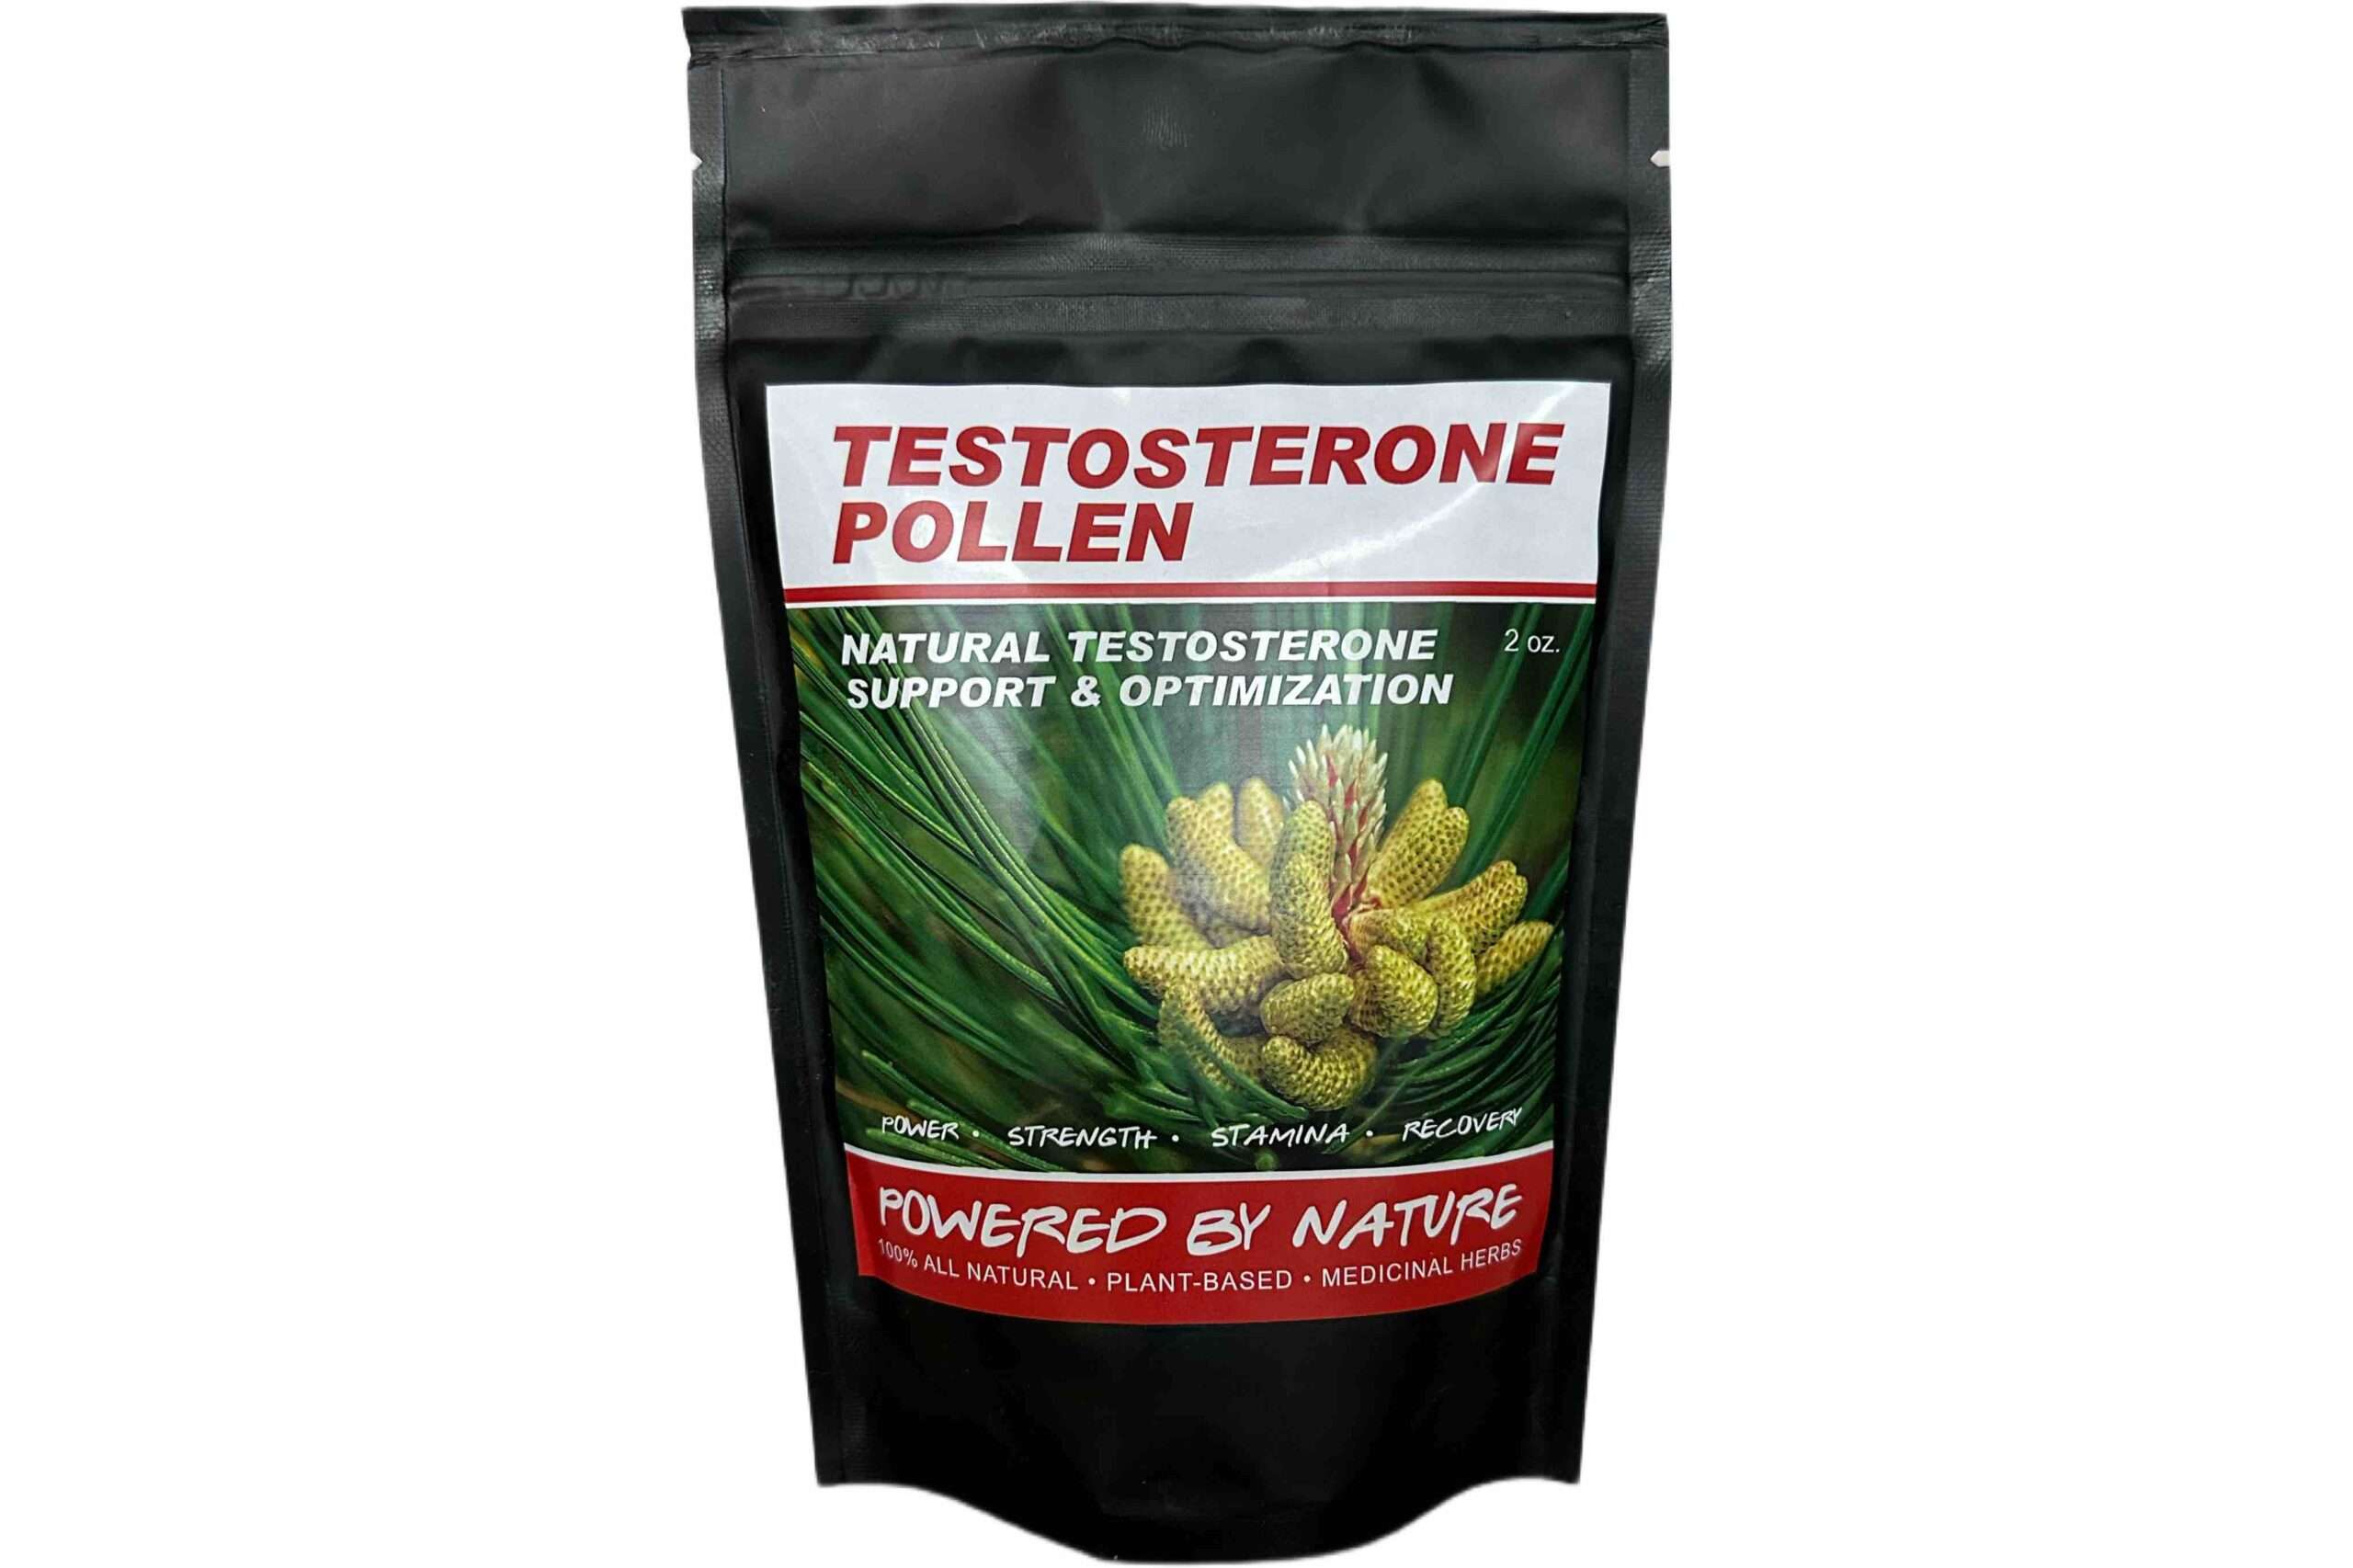 Testosterone Pollen Men's Testosterone Supplement & Superfood